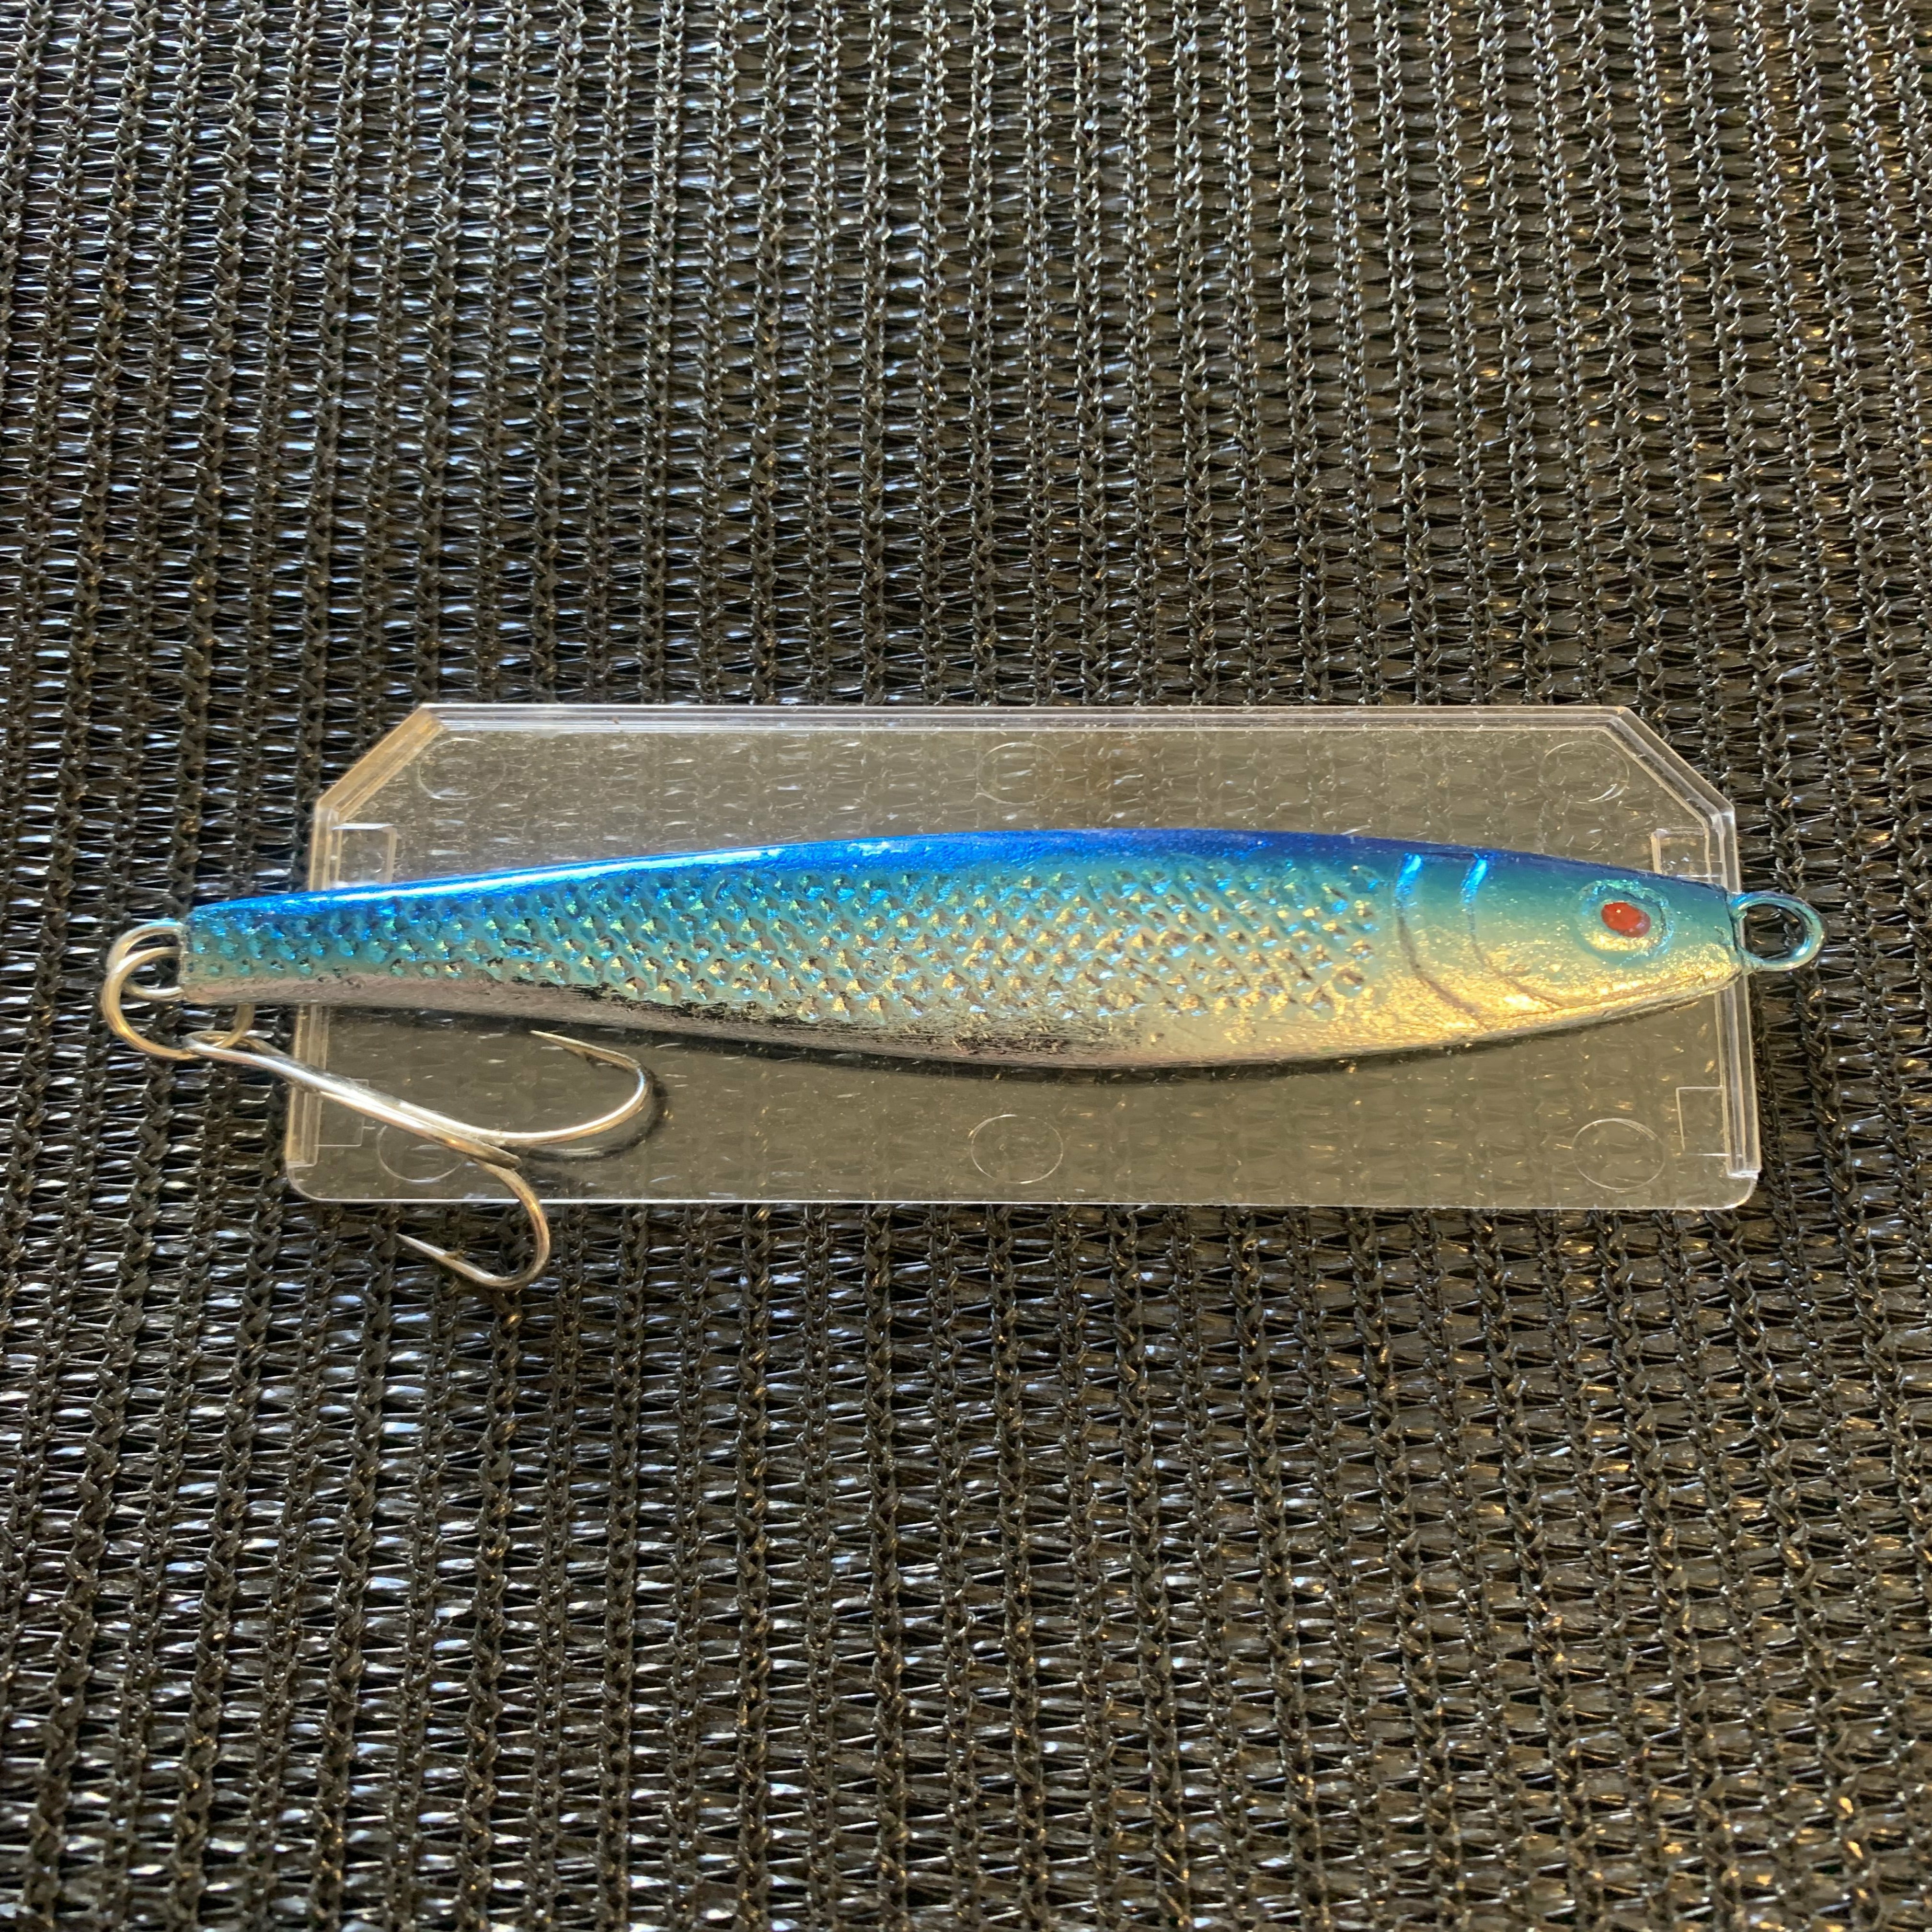 Fishing lure Spinner 10cm-76g Bluey